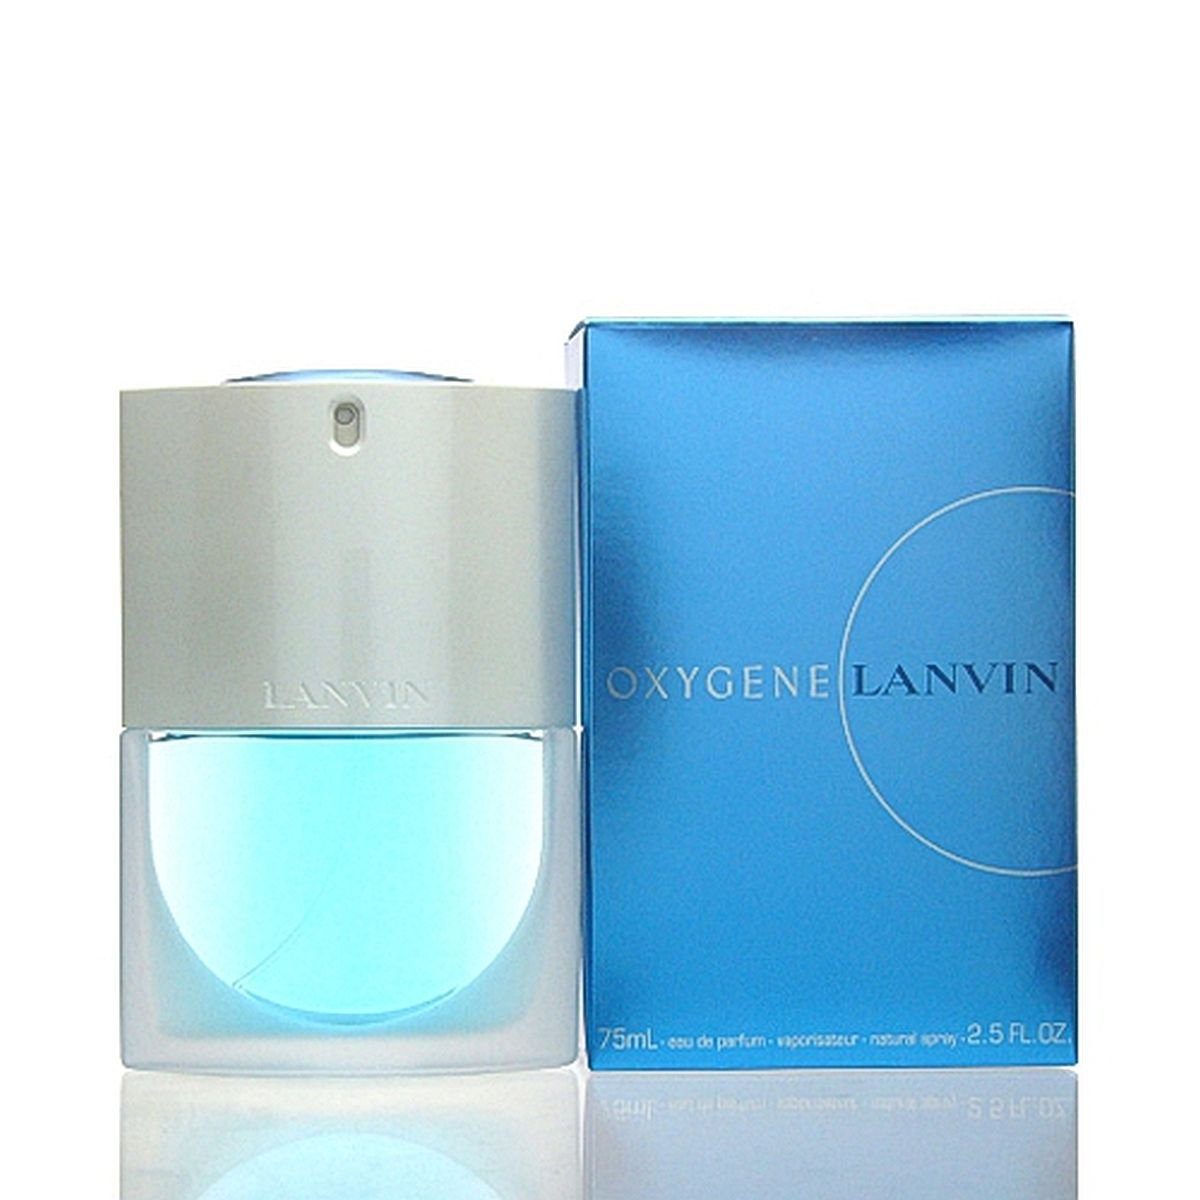 ml Parfum Lanvin de de LANVIN Oxygene Parfum Eau Eau 75